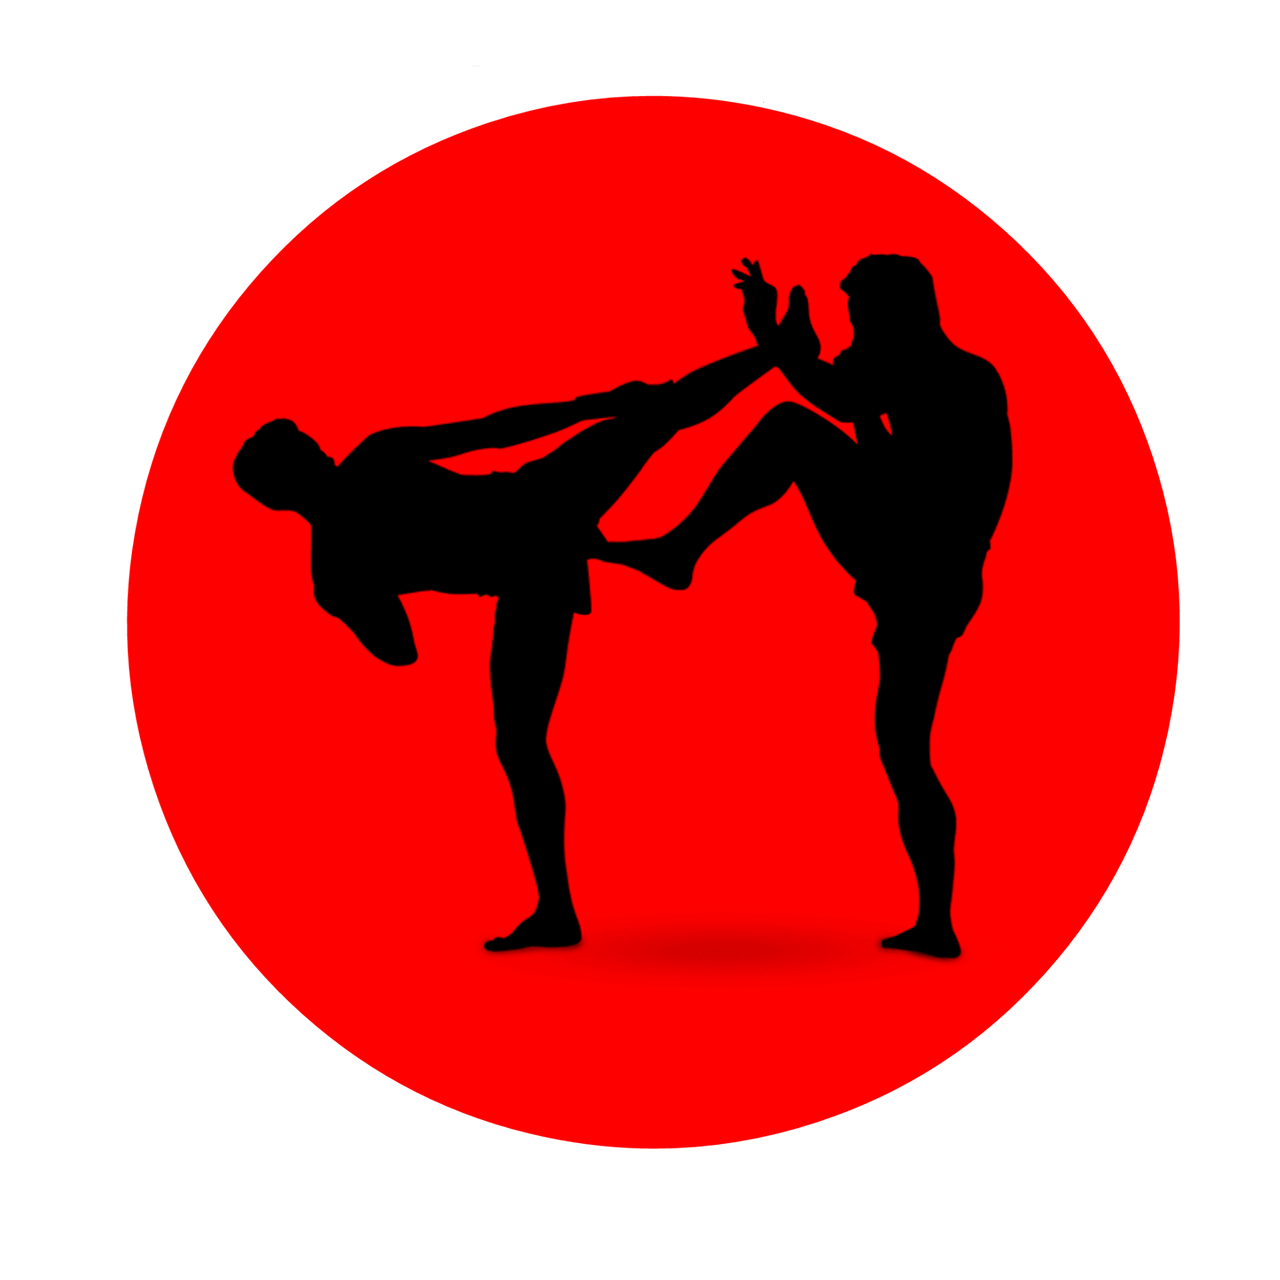 boxing icon silhouette free photo